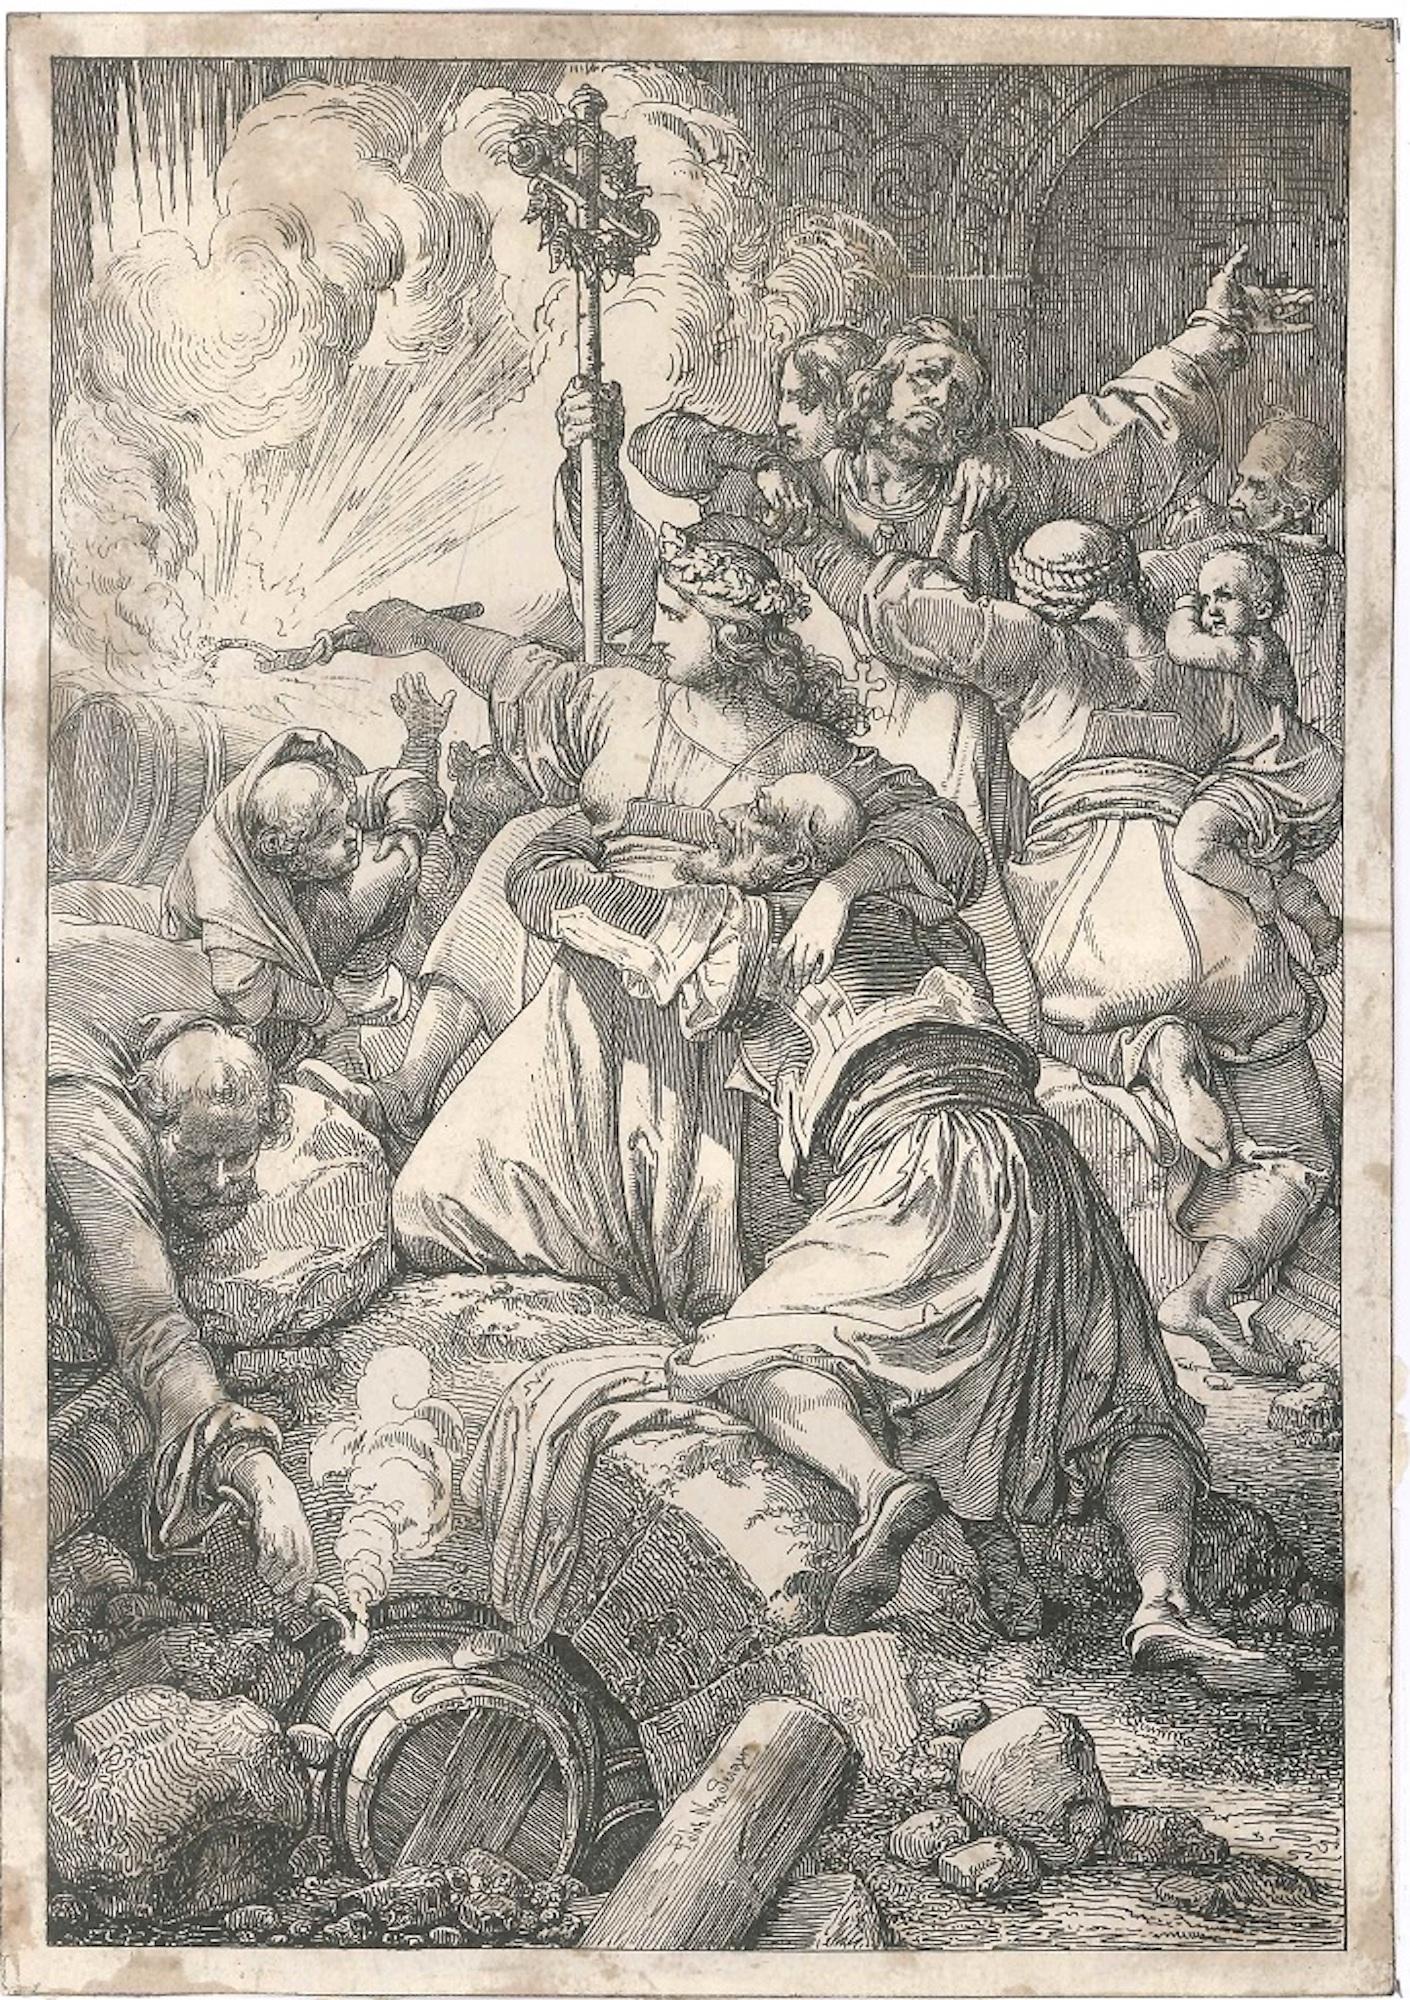 Les Martyrs Chrétiens - gravure sur bois originale de J. Nepomuk Geier